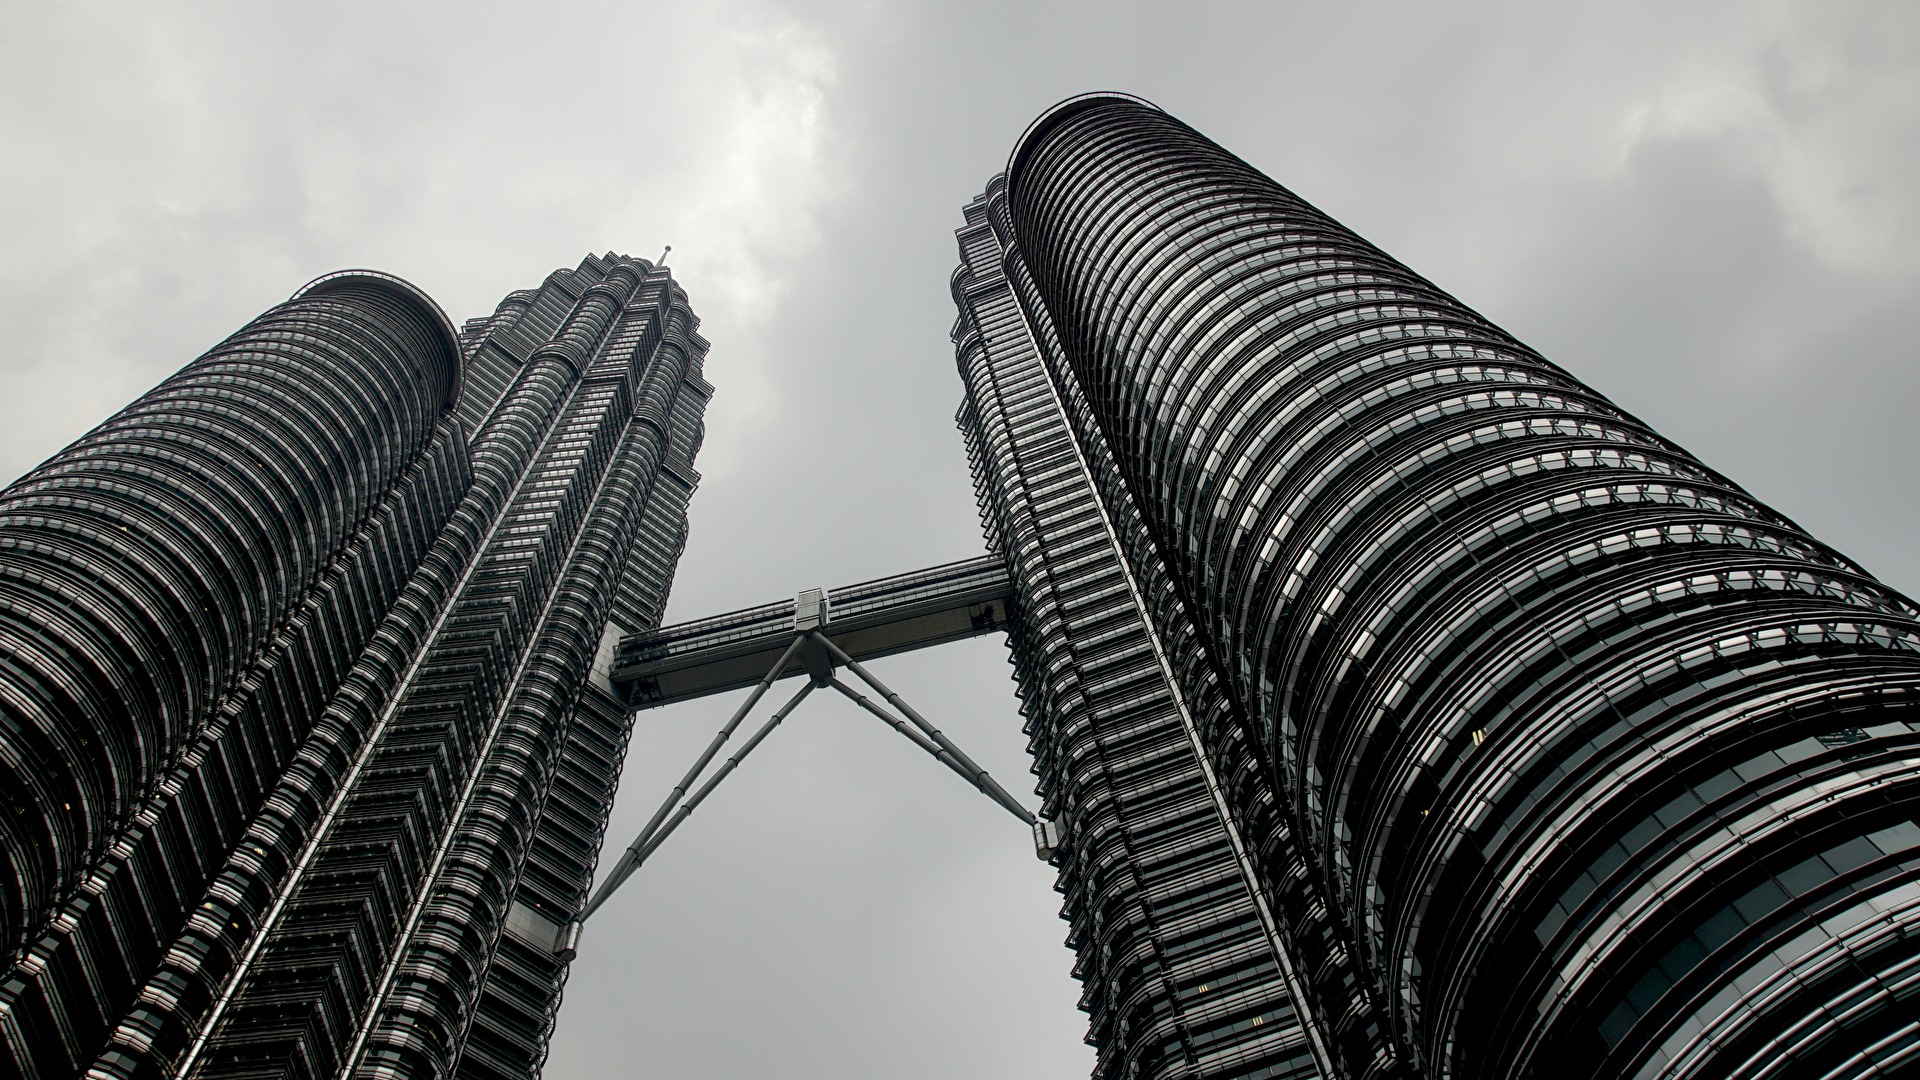 #Perspektive - KL Petronas Towers